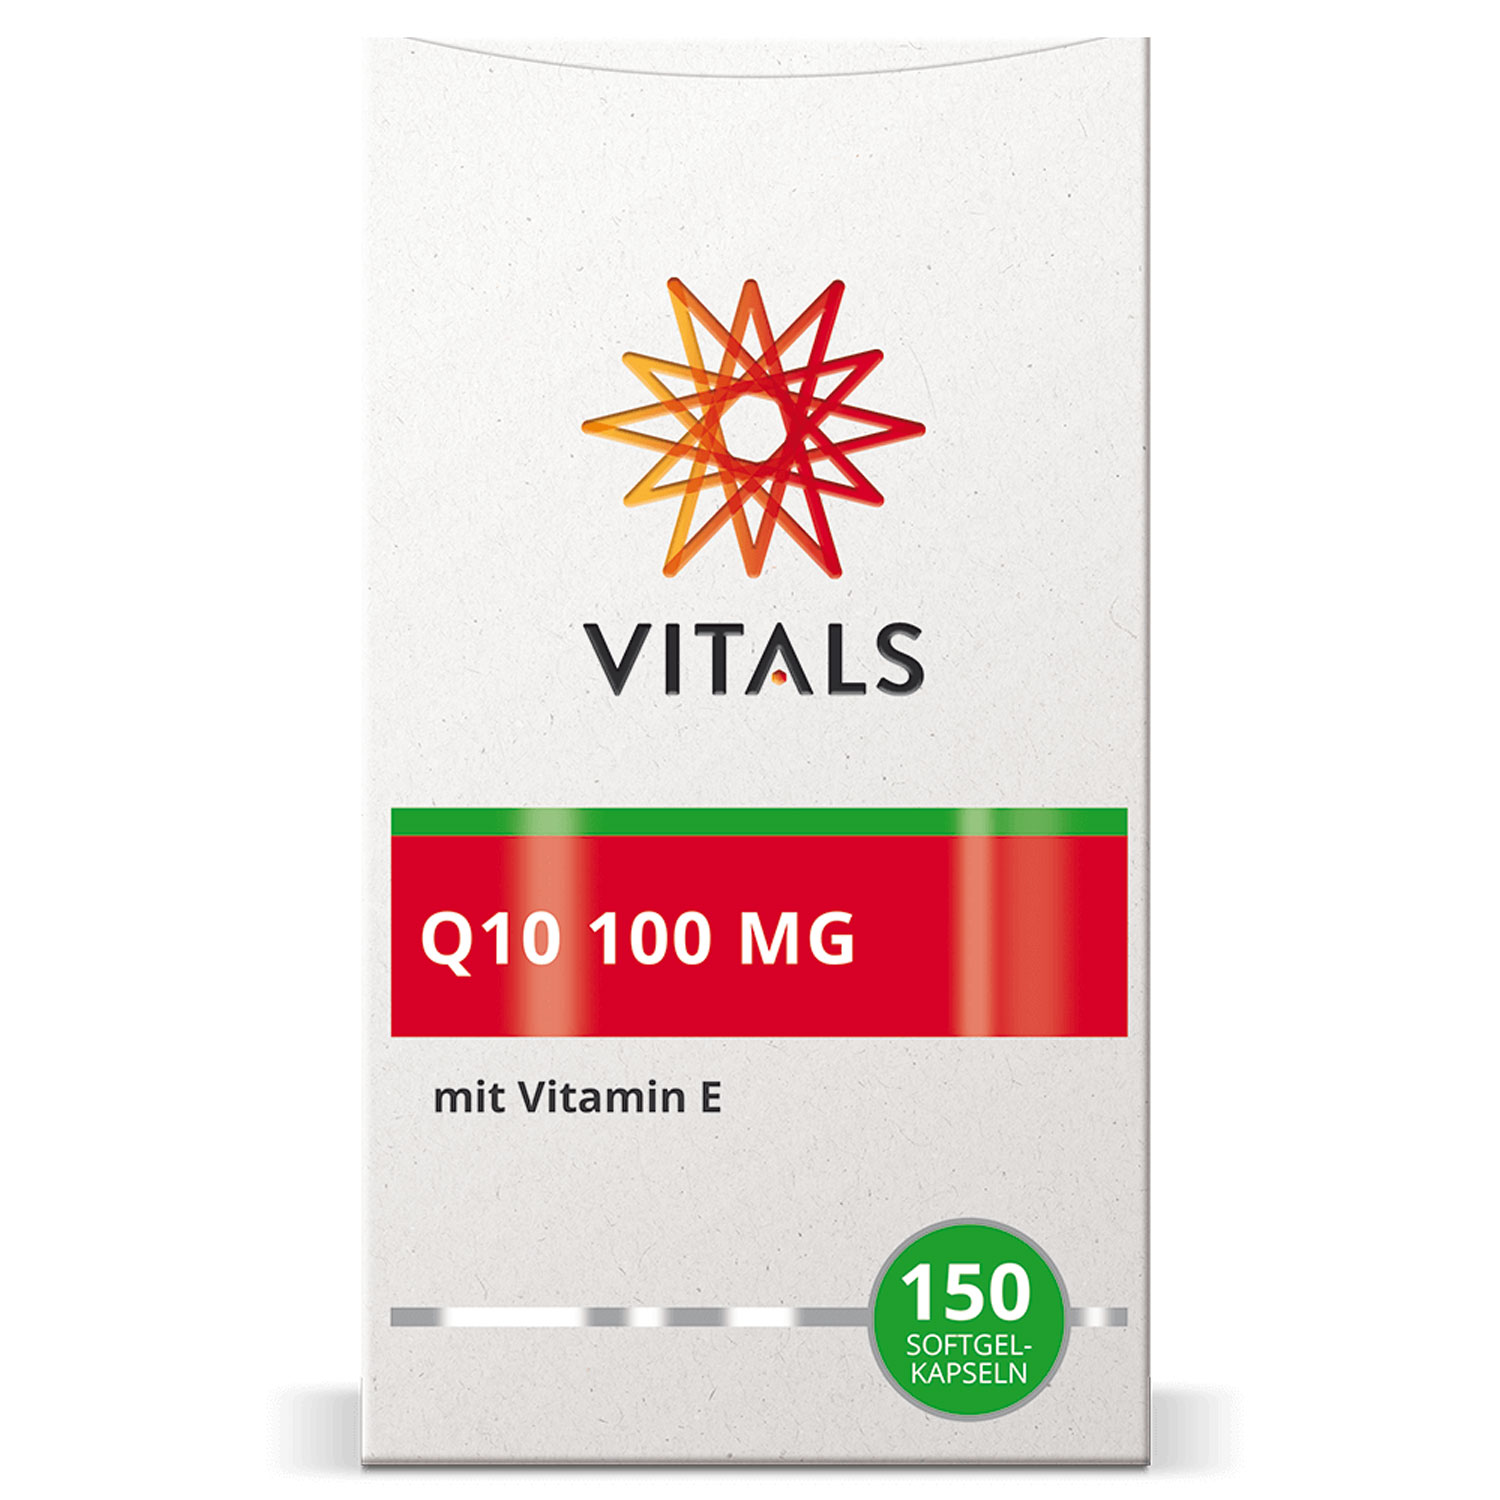 Q10 100 mg von Vitals - Verpackung